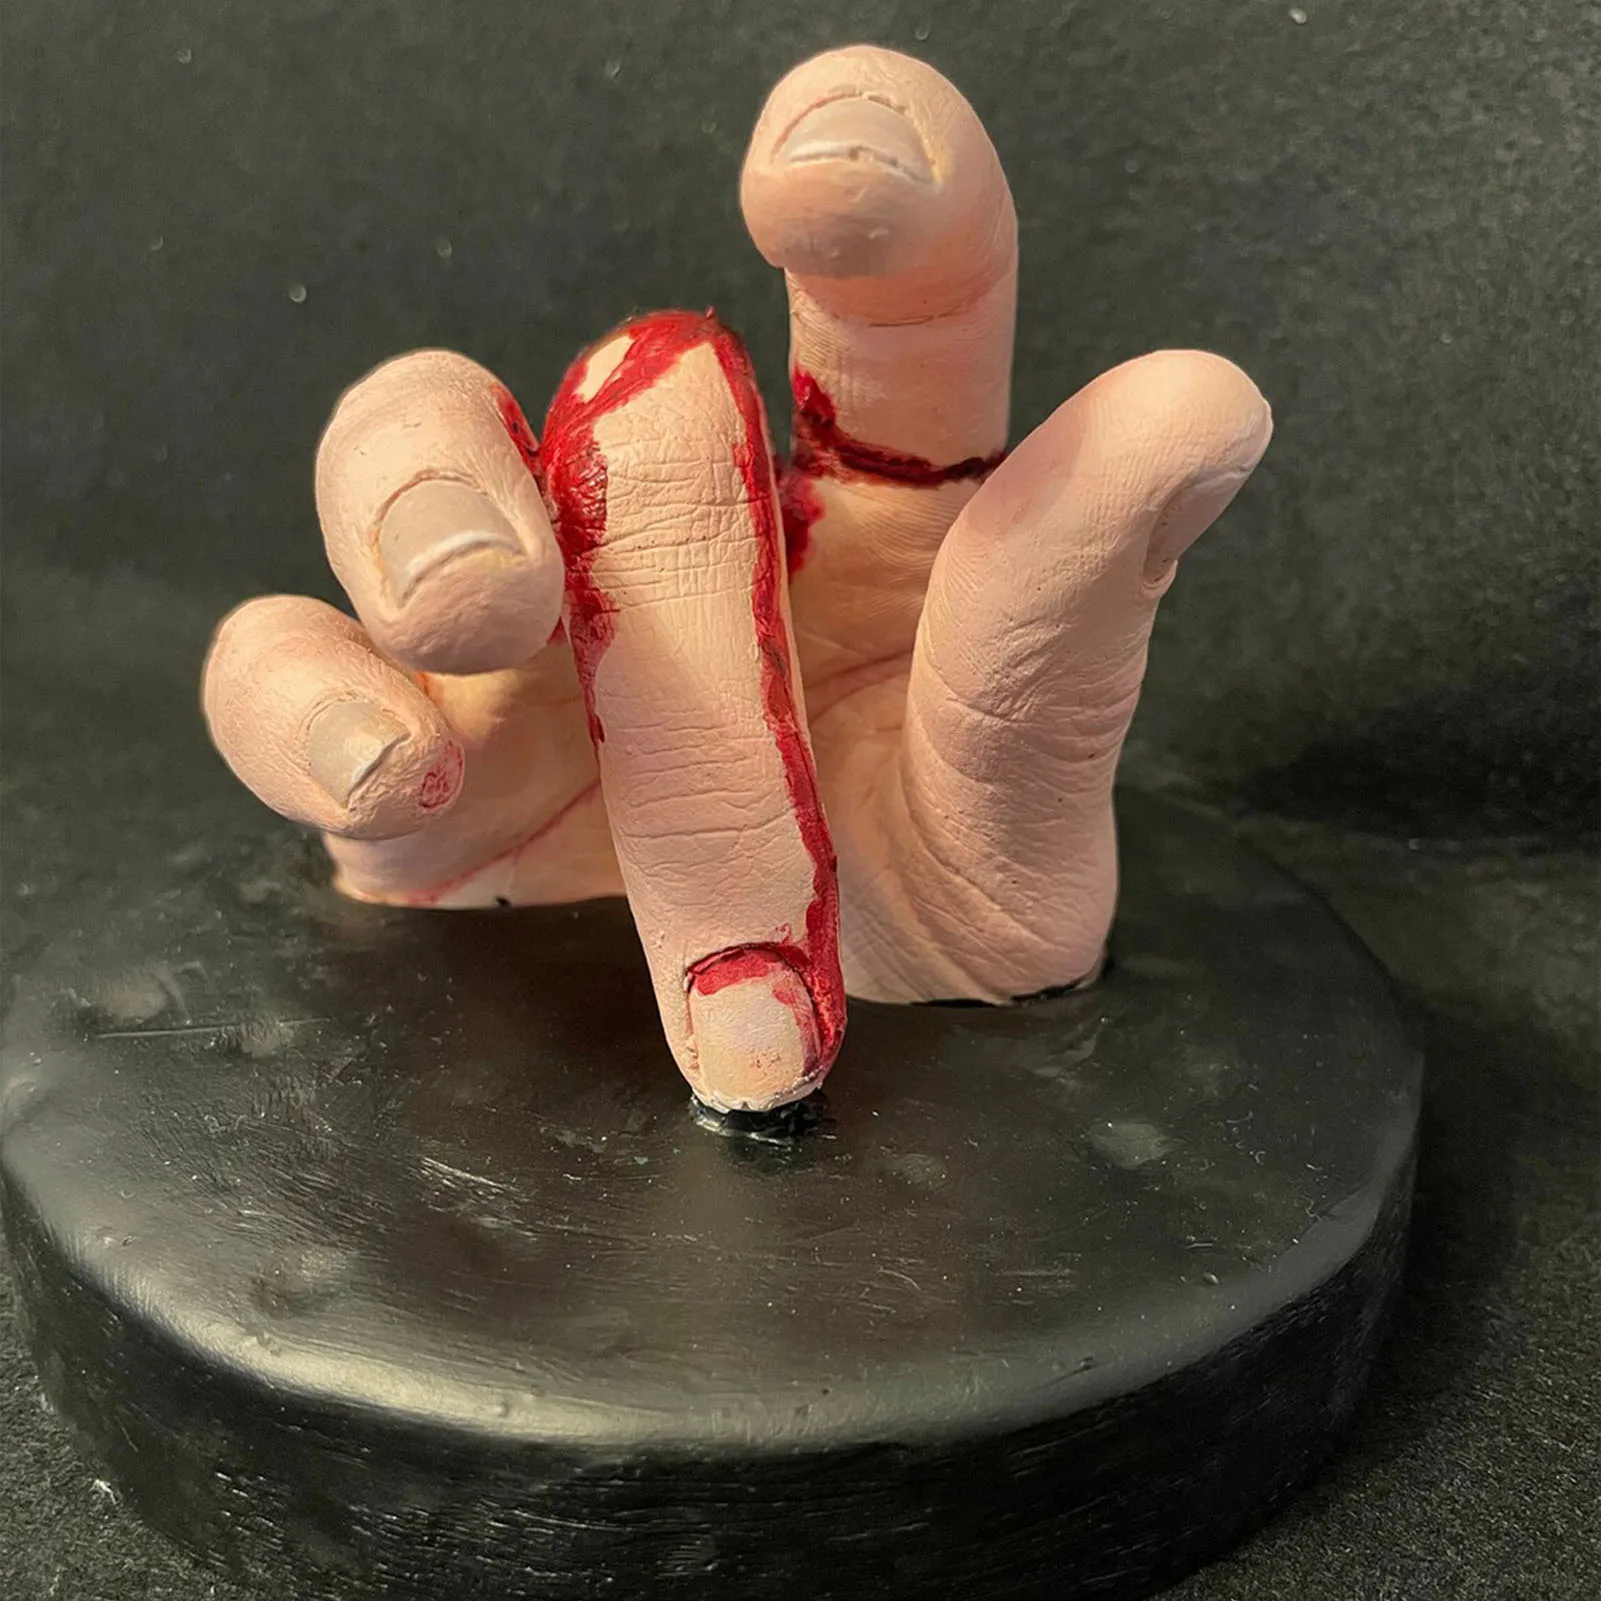 Страшная статуэтка из смолы с отрубленной рукой Реалистичная фигурка в форме руки для подарка другу семьи соседу. Изображение 1